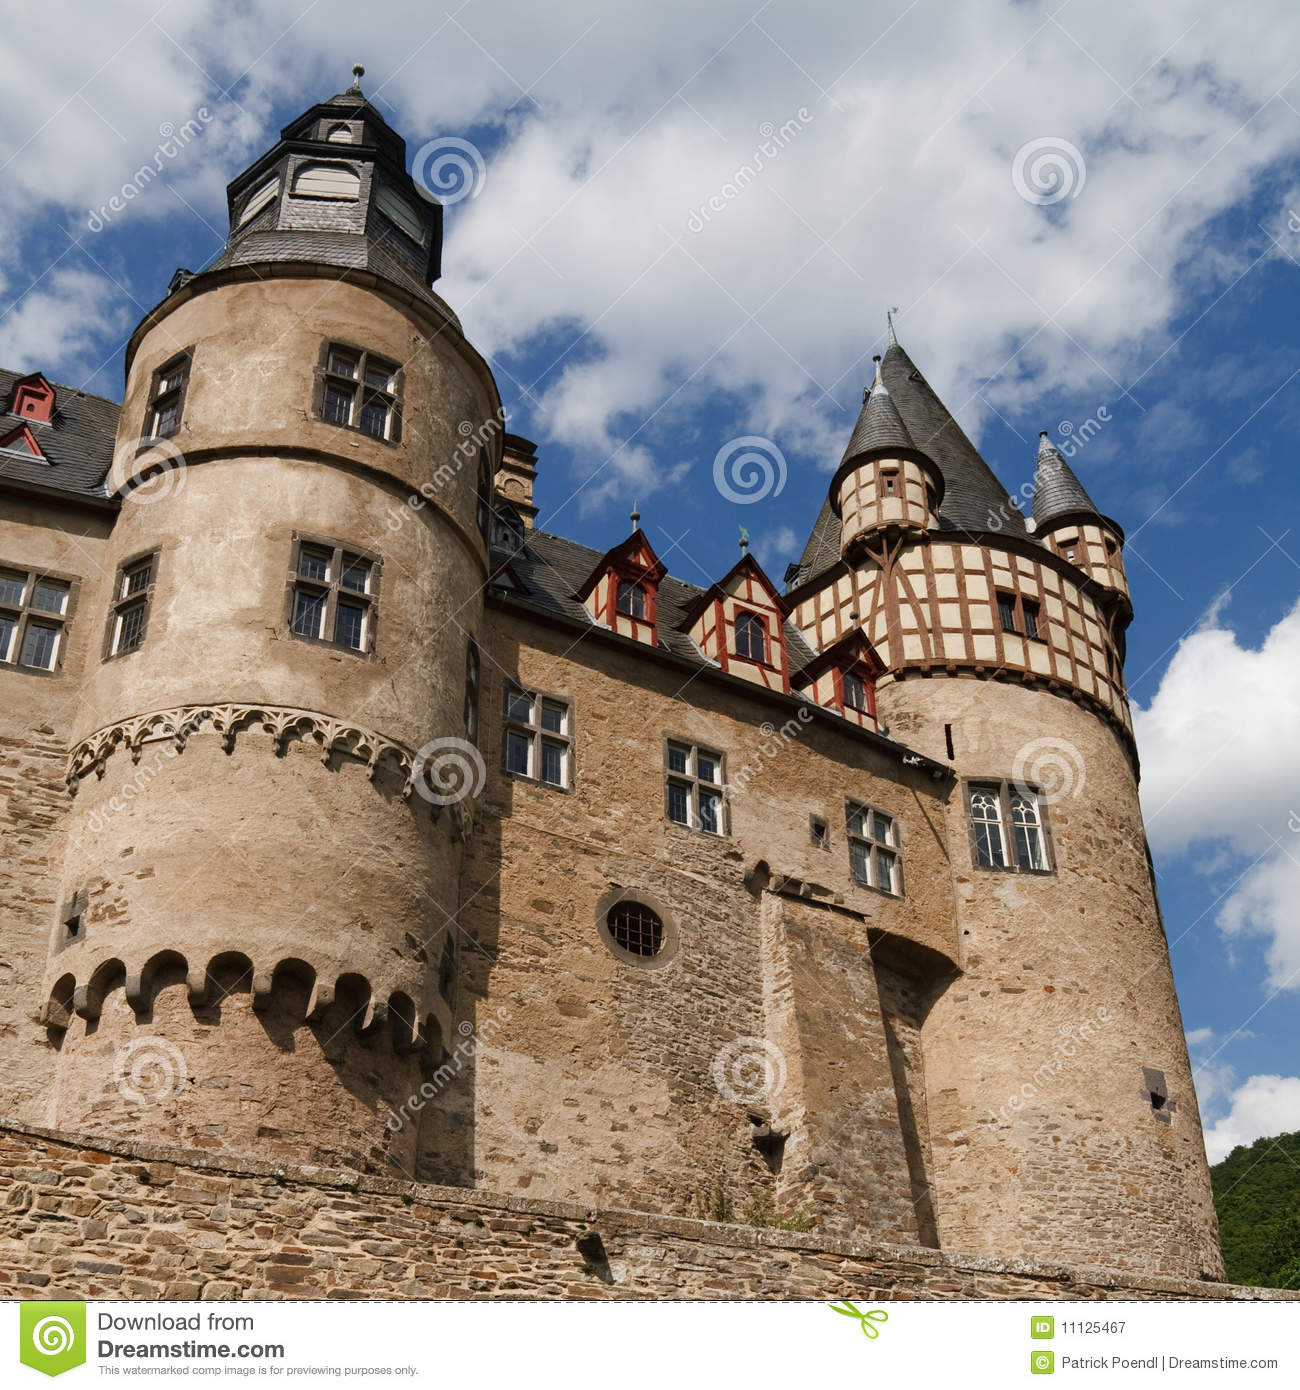 Nice Images Collection: Burresheim Castle Desktop Wallpapers